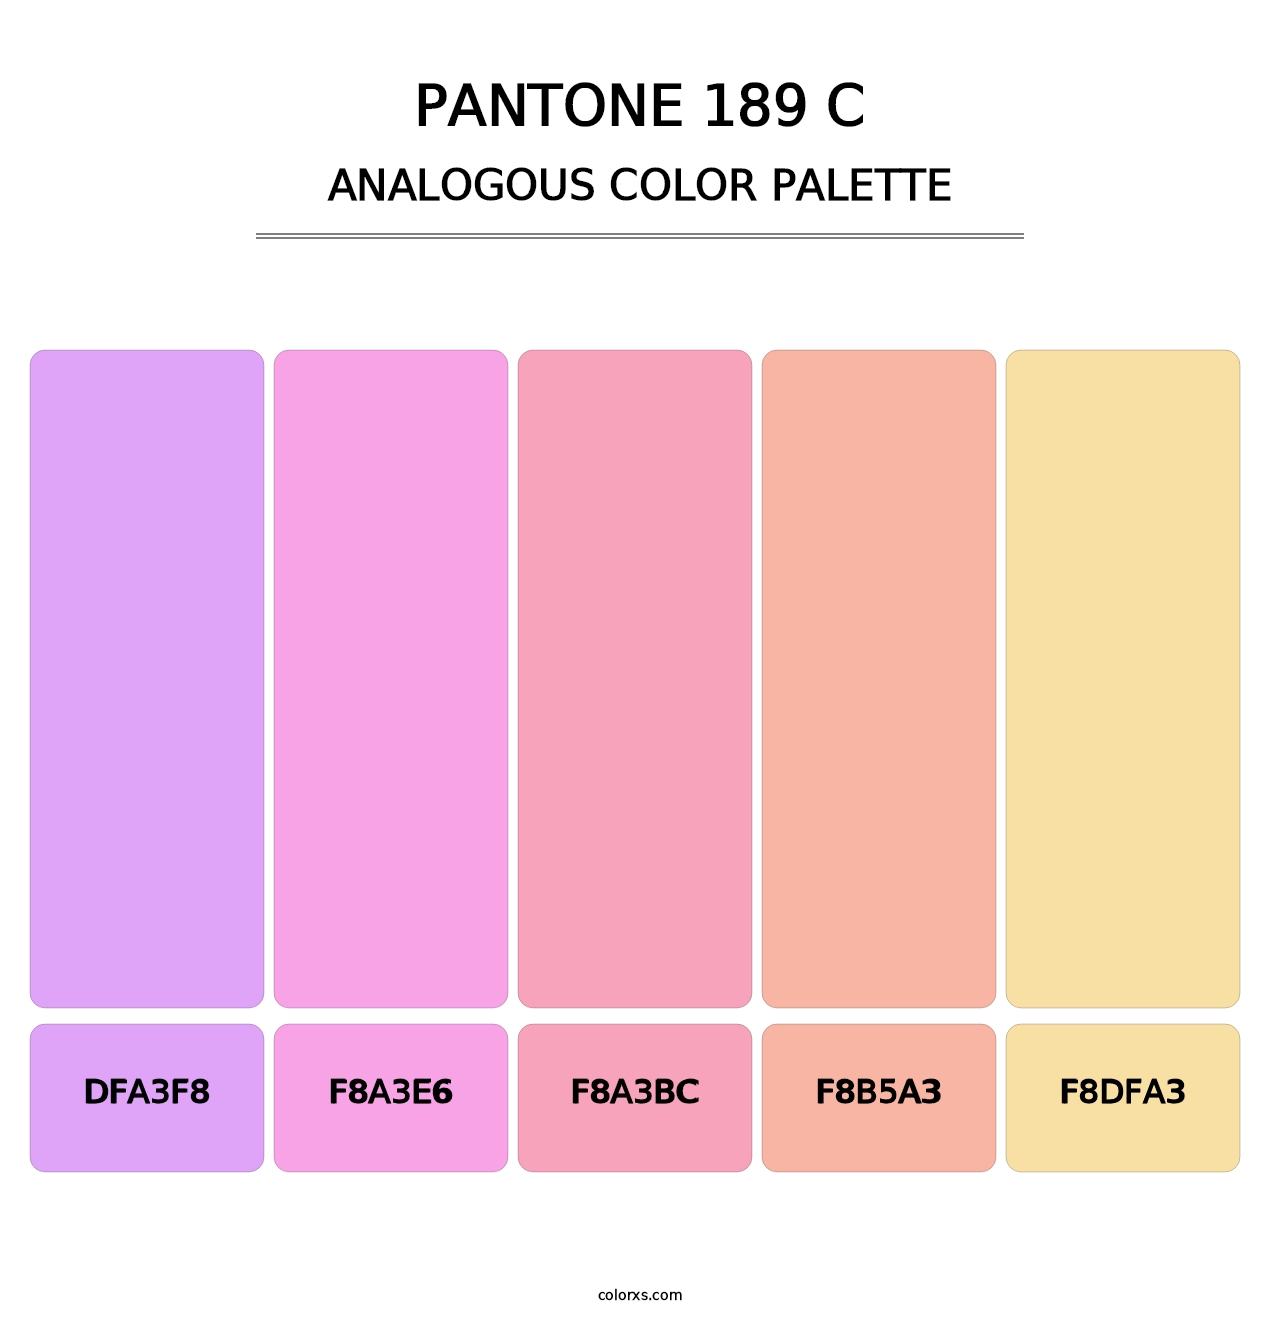 PANTONE 189 C - Analogous Color Palette